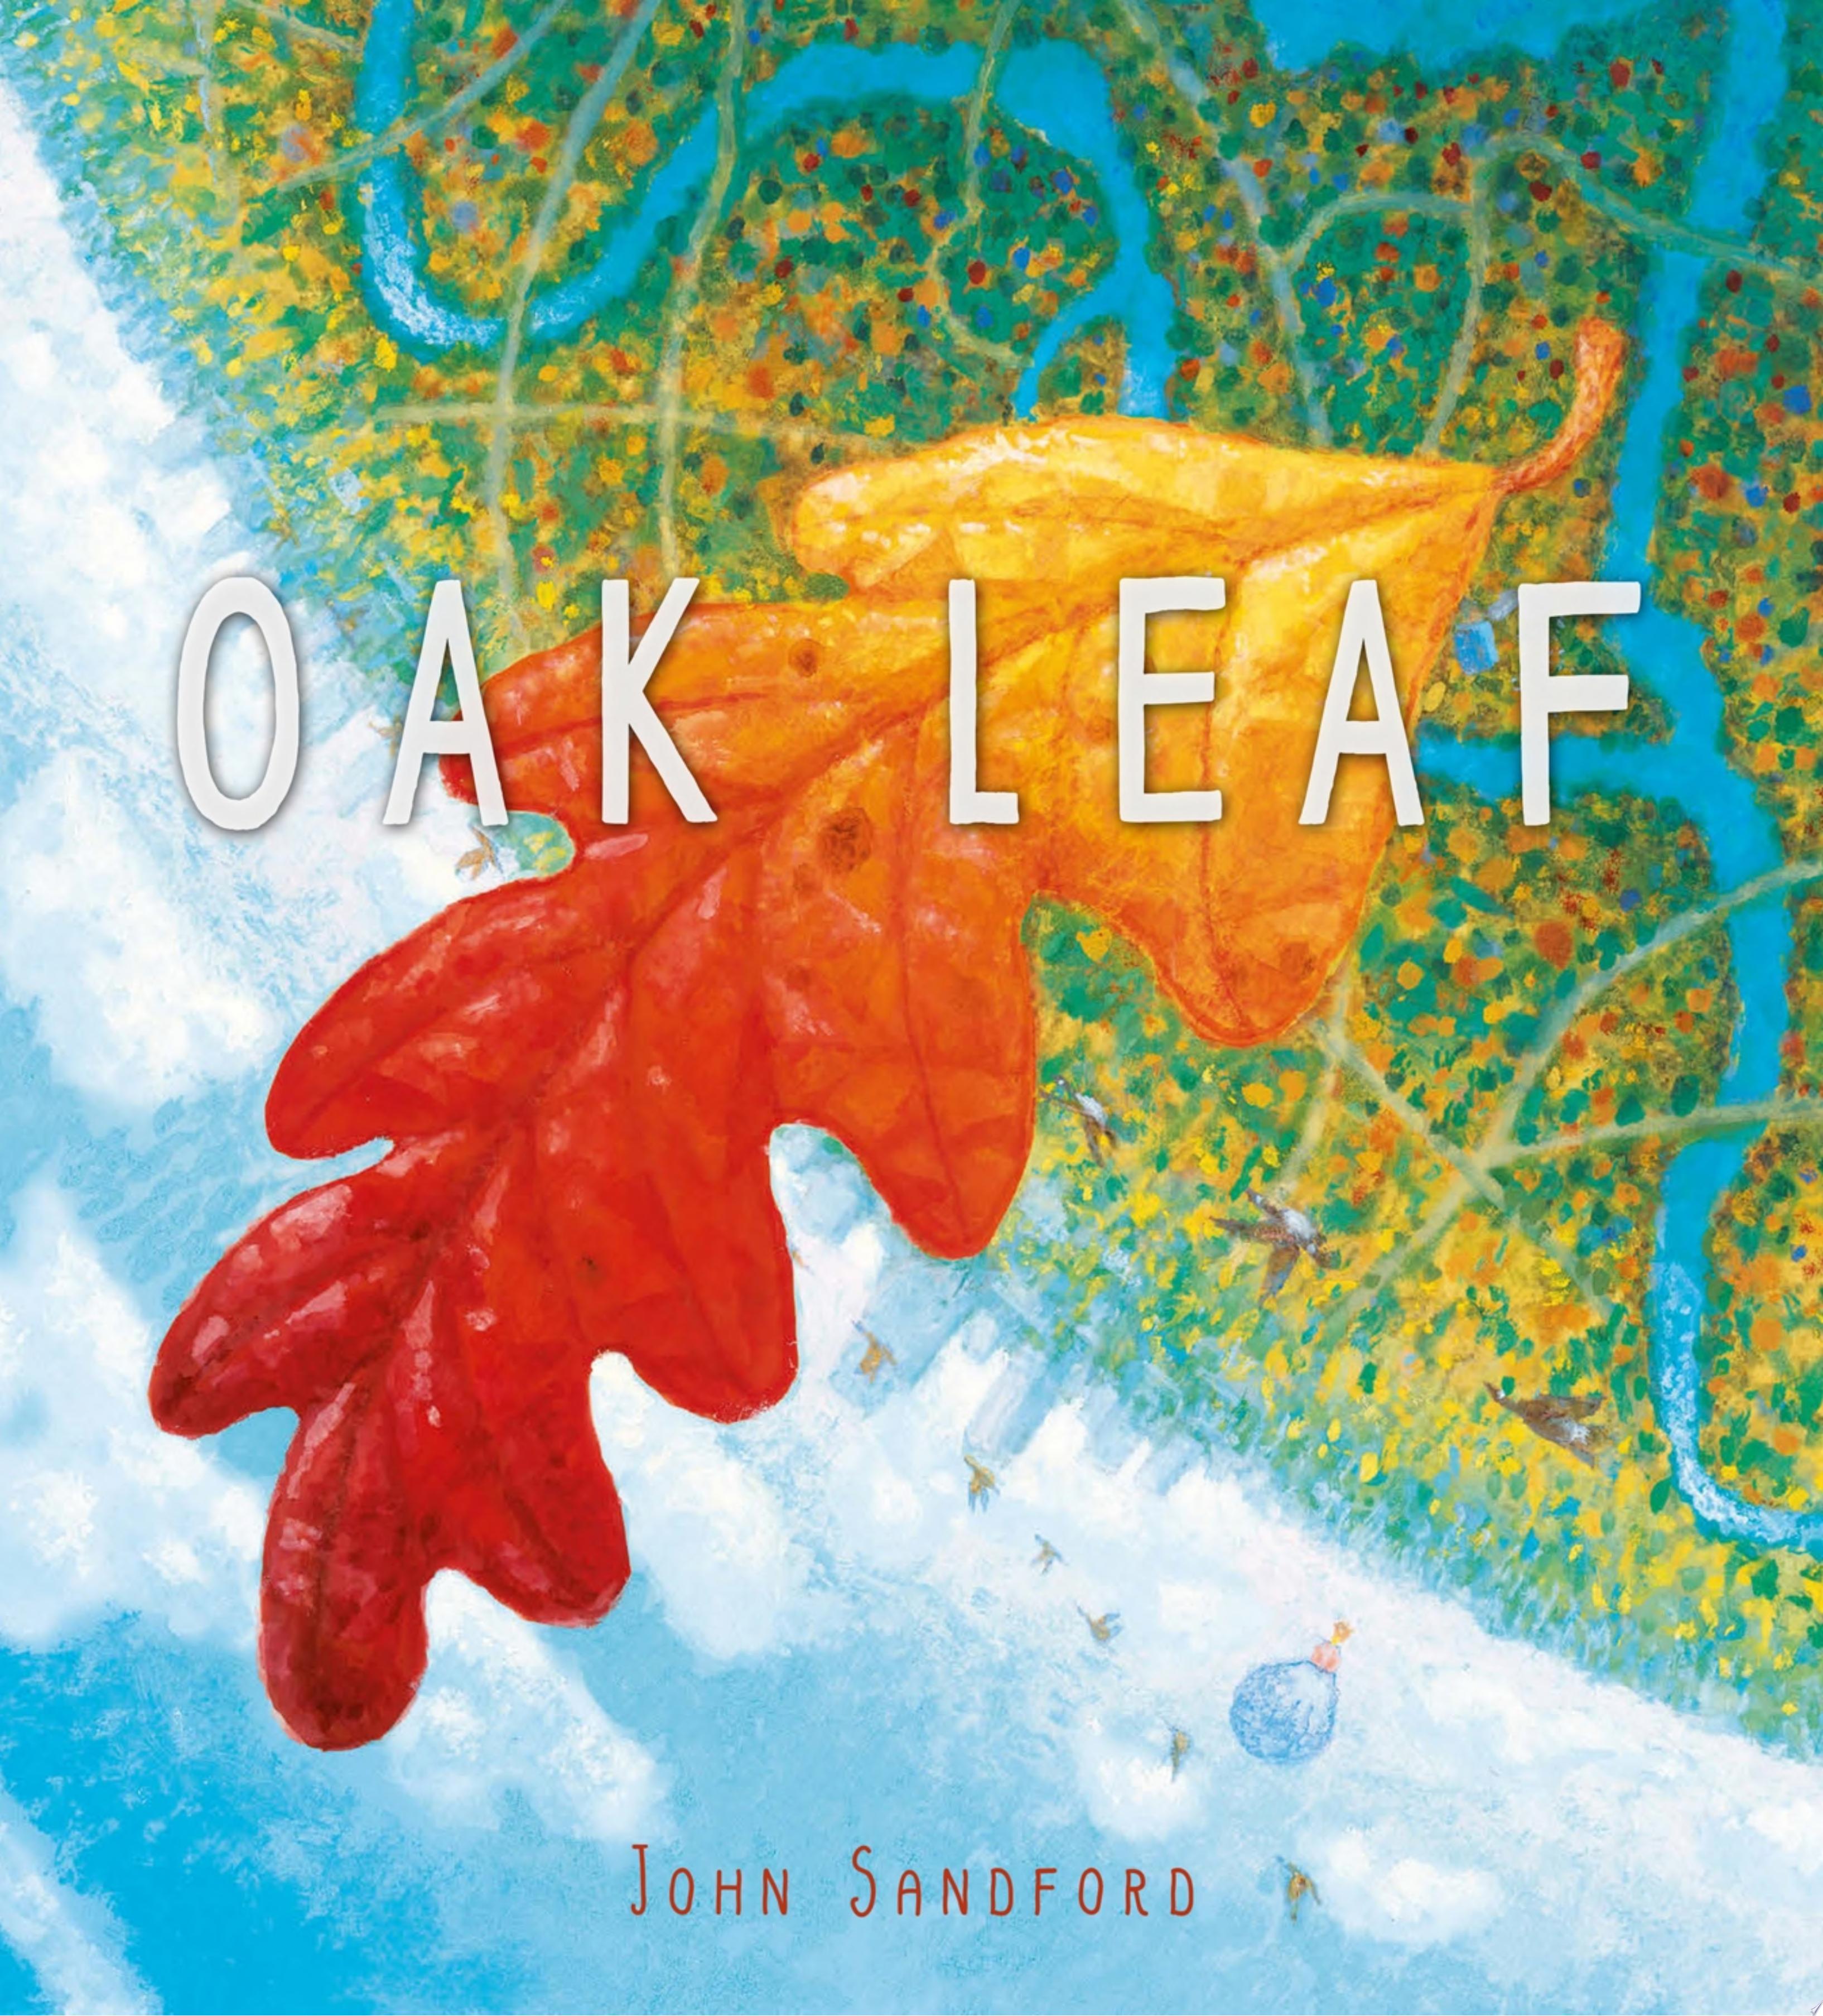 Image for "Oak Leaf"